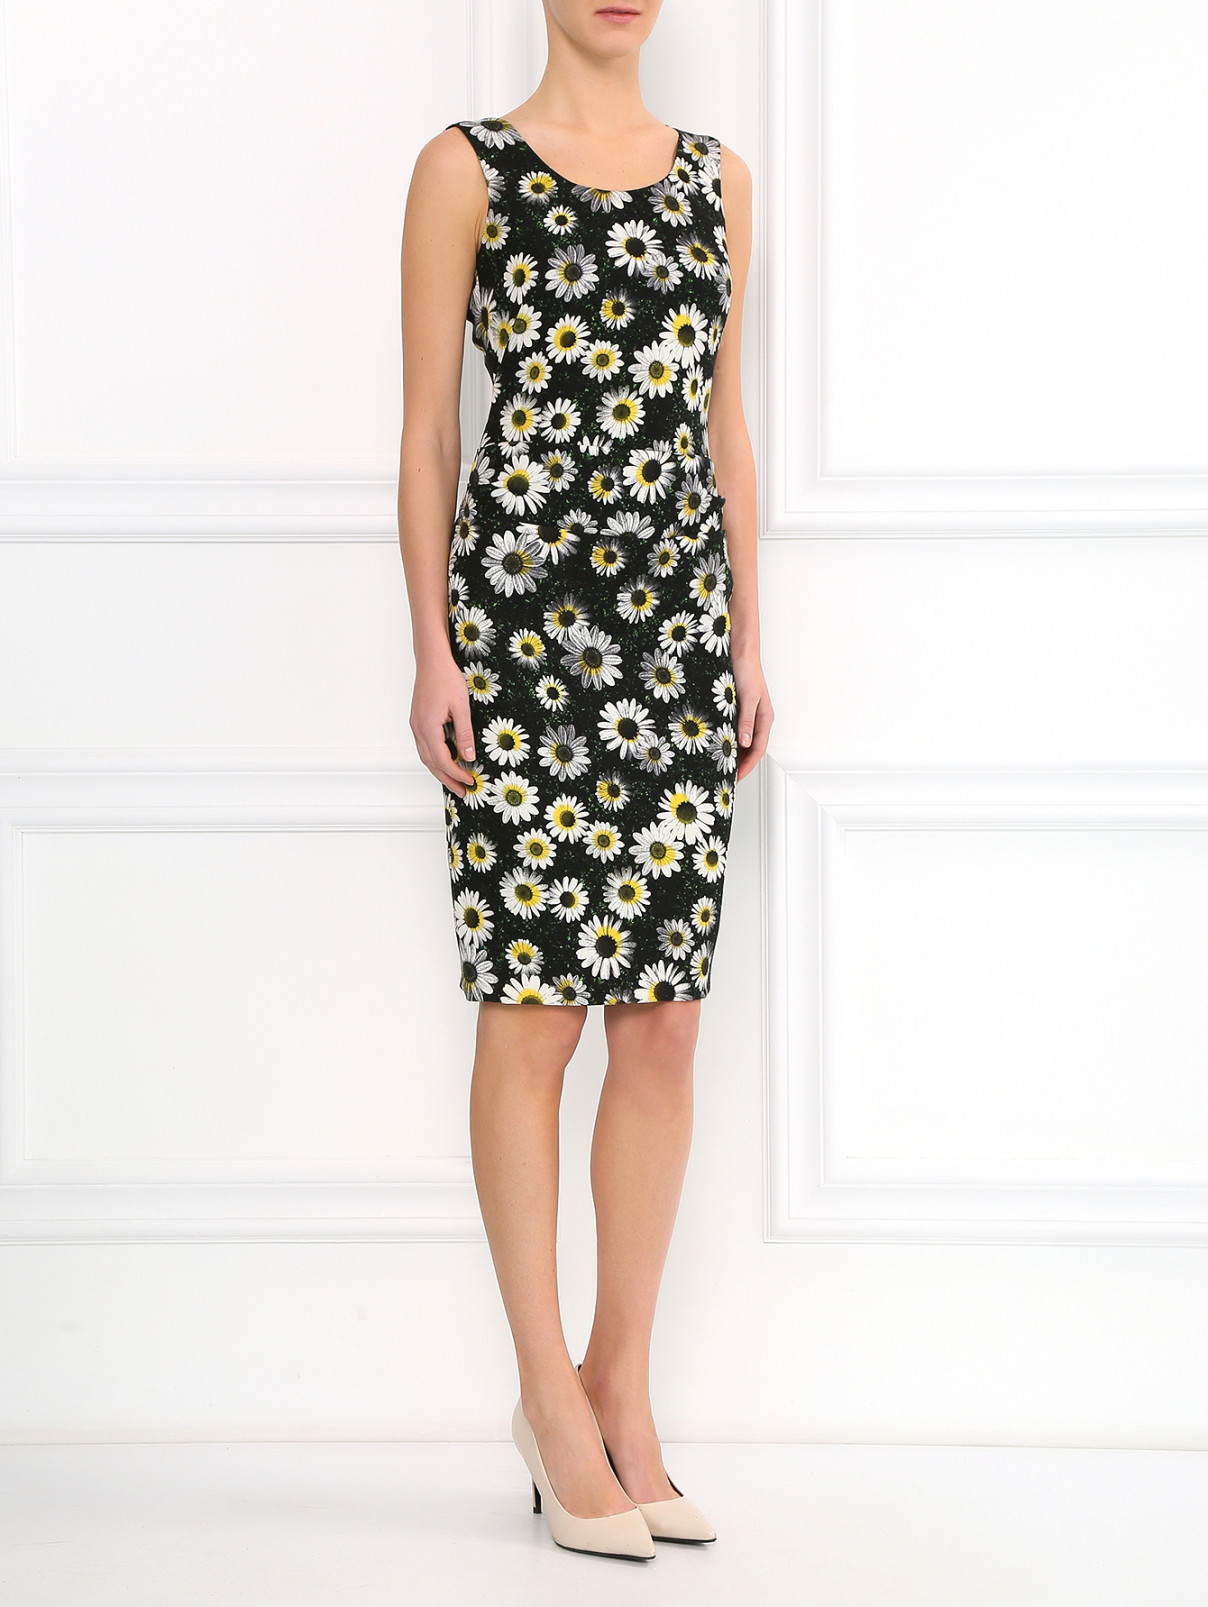 Платье-футляр с цветочным узором Moschino Cheap&Chic  –  Модель Общий вид  – Цвет:  Черный